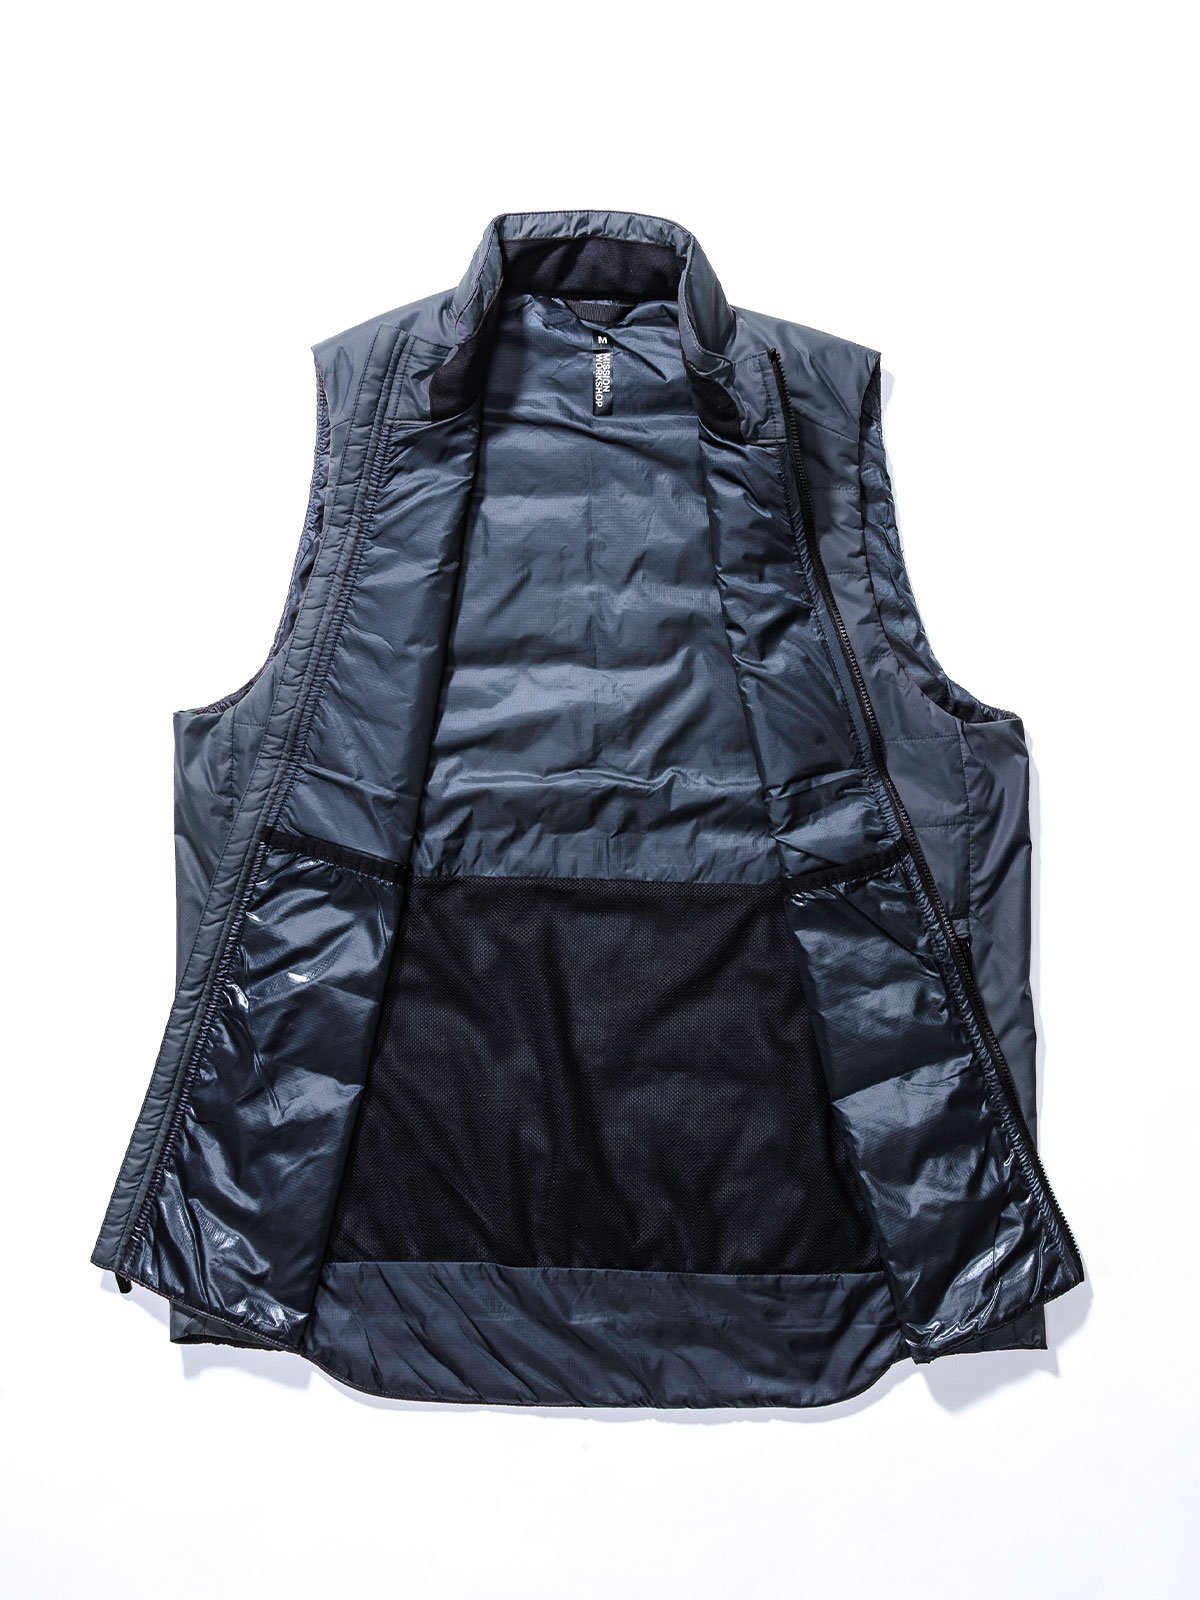 Acre Series Vest by Mission Workshop - Weerbestendige tassen & technische kleding - San Francisco & Los Angeles - Gemaakt om te weerstaan - Voor altijd gegarandeerd